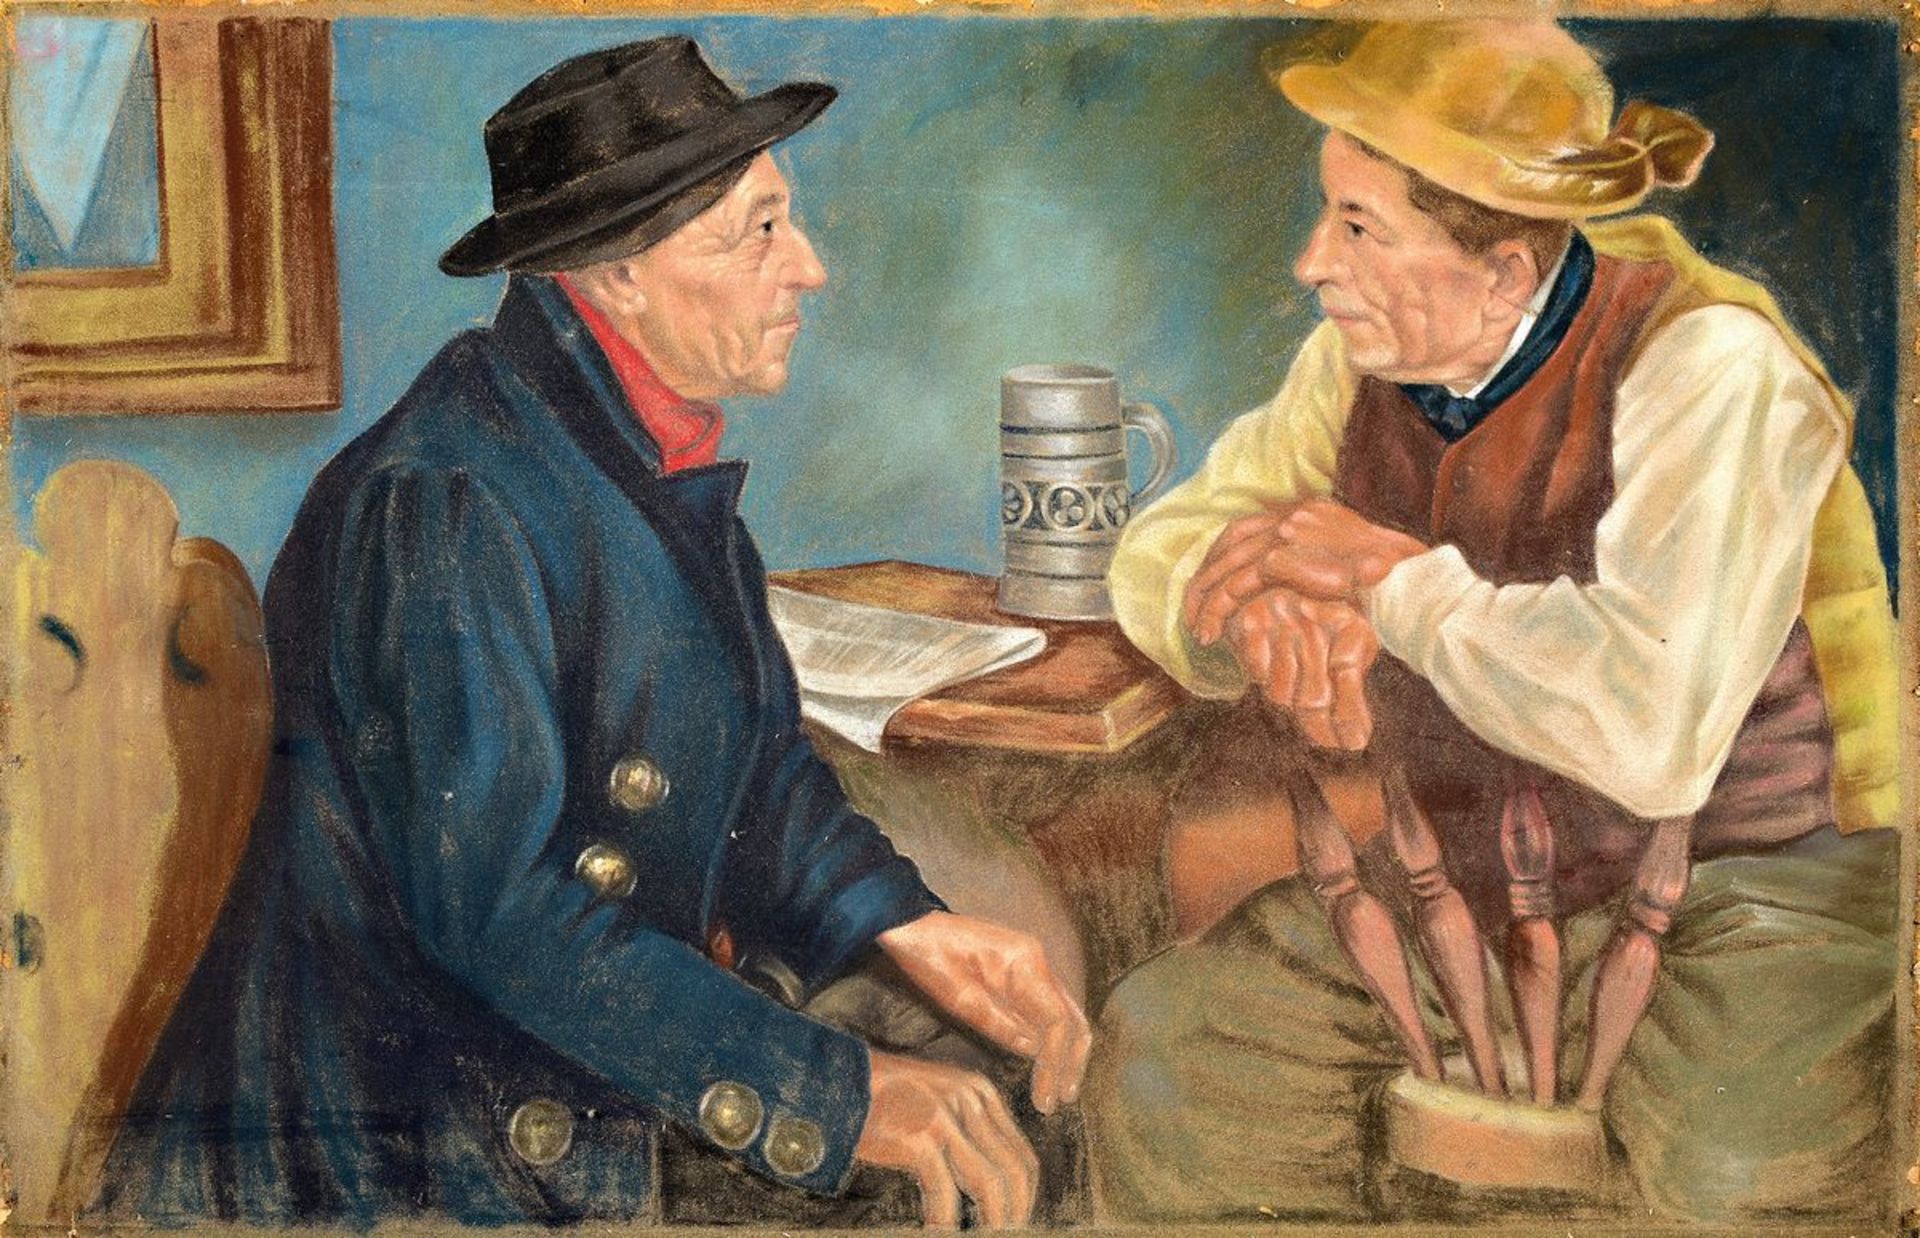 Unbekannter Künstler, süddeutsch, um 1900, zwei Bauern in